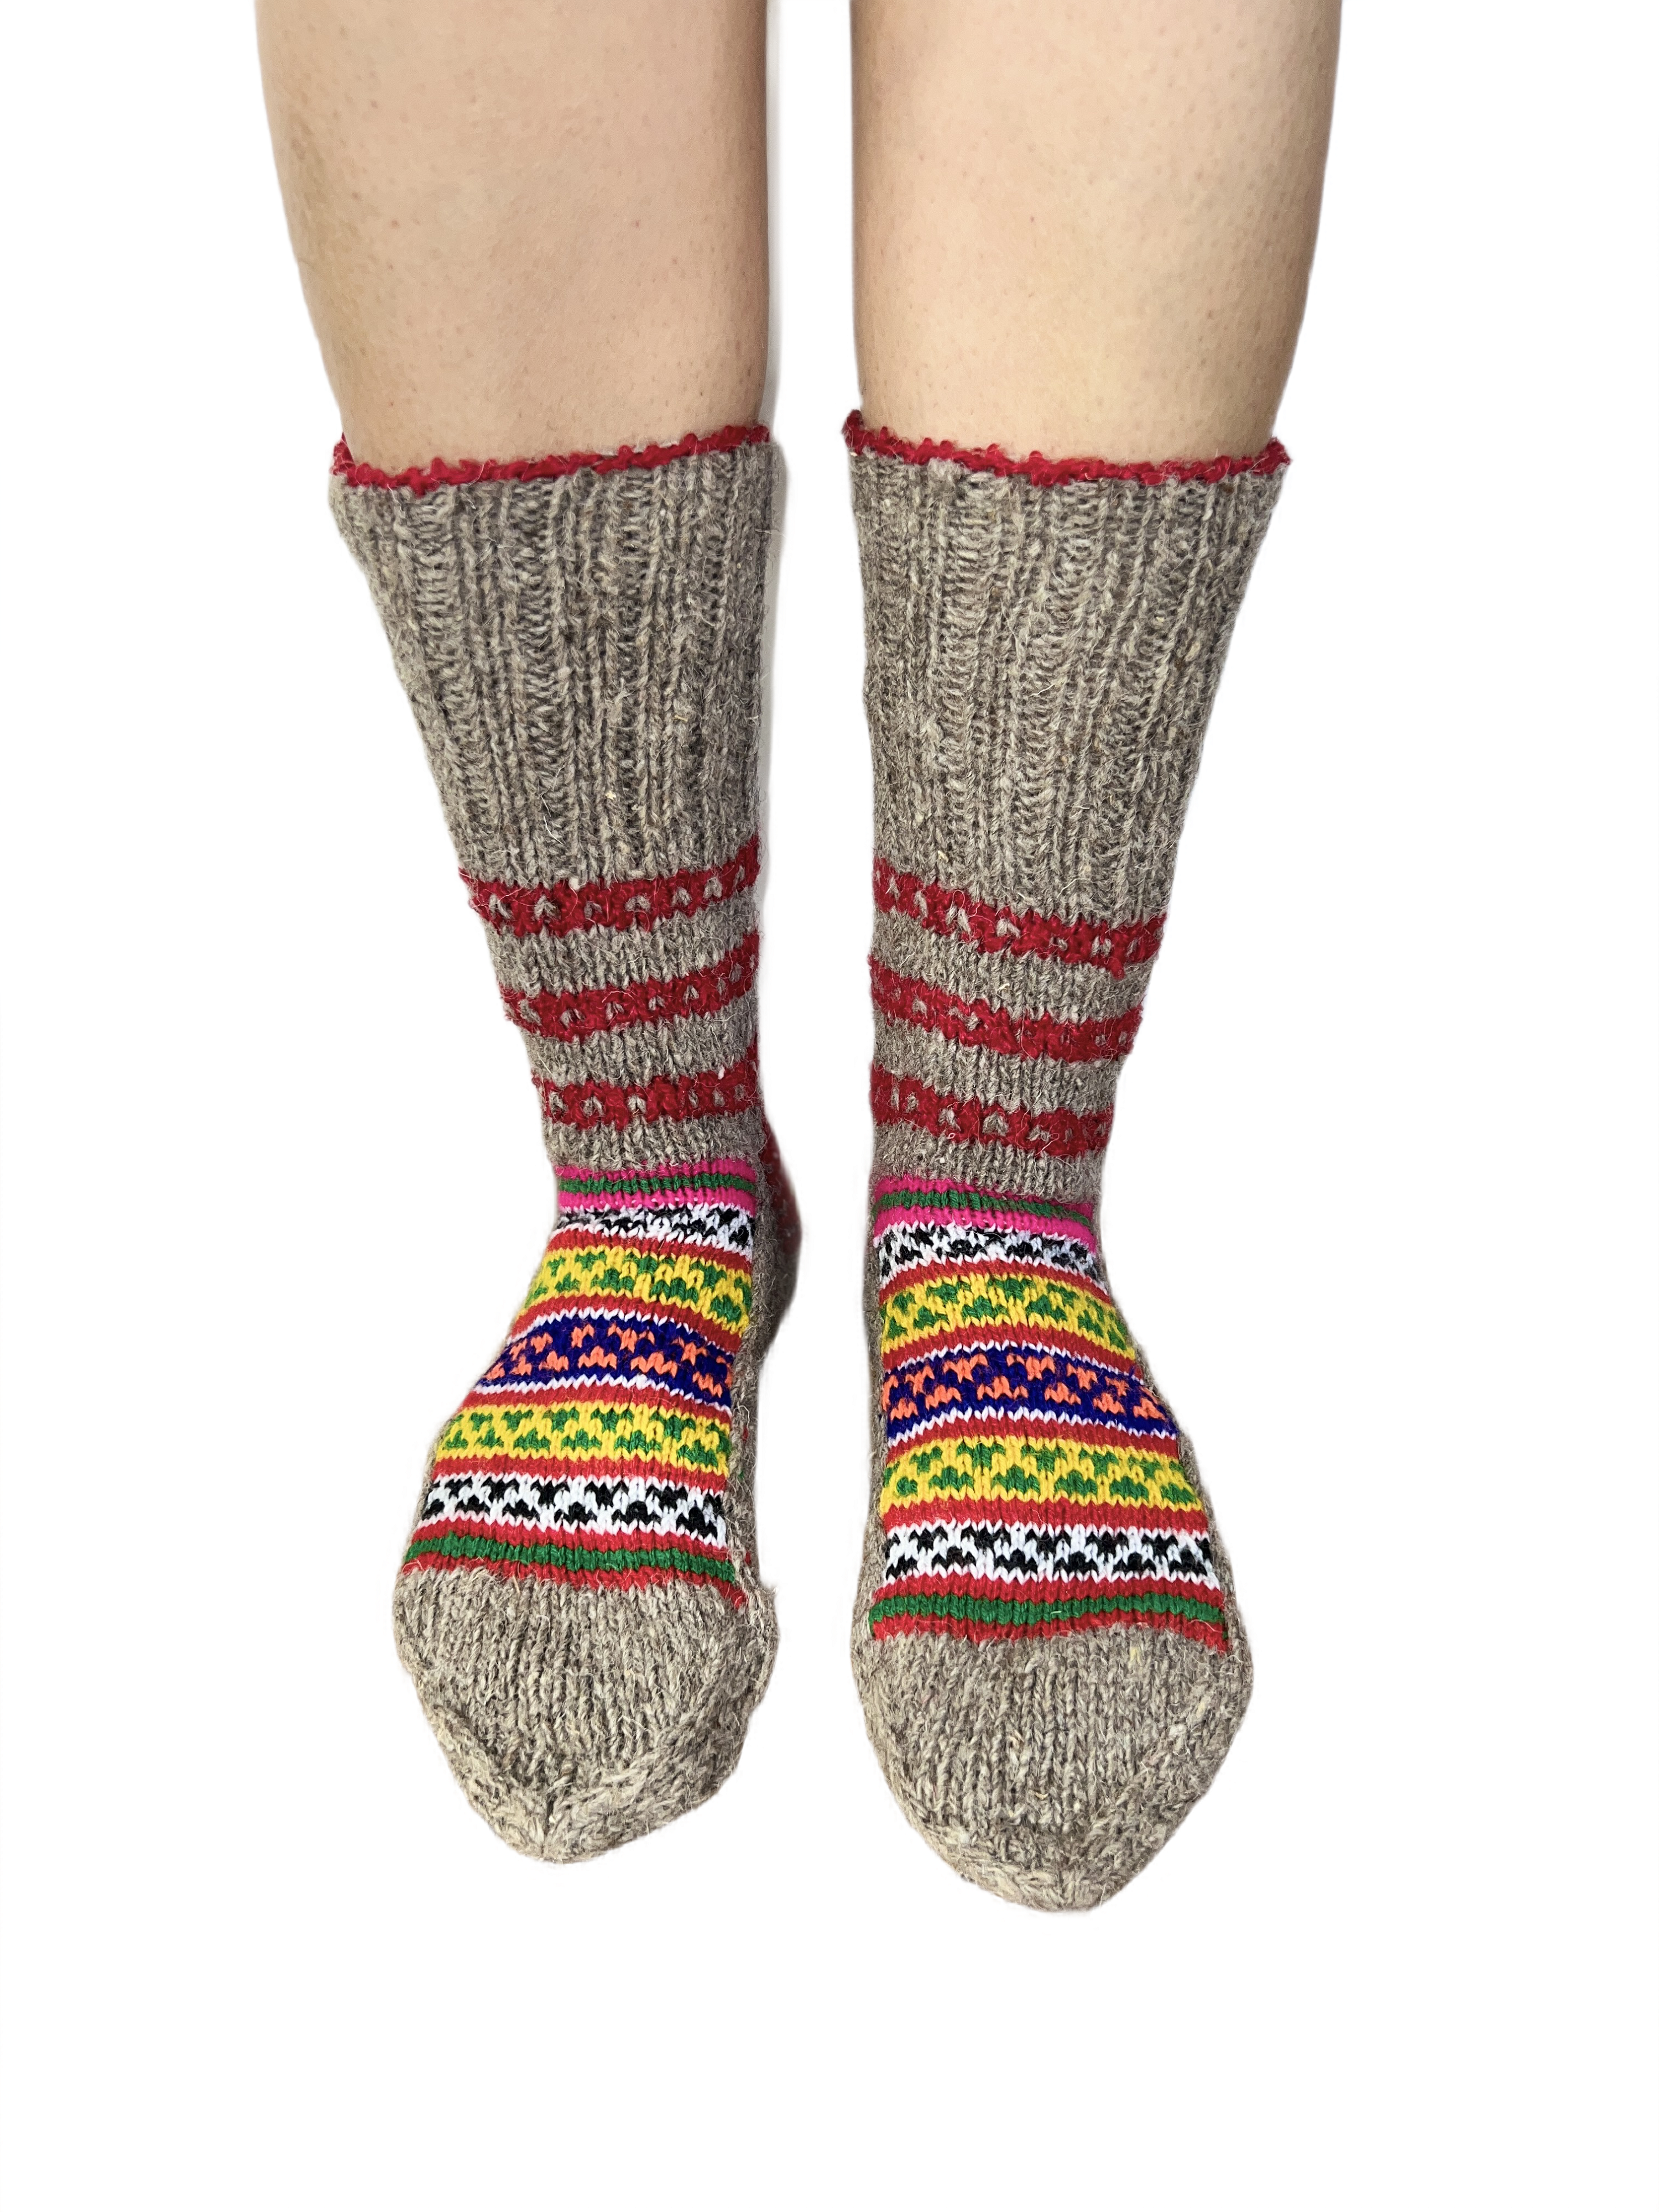 Slouch Pure Sheep Wool fuzzy Socks | Warm Leg Warmers |Cute Socks | Hand Knitted Winter Socks for women